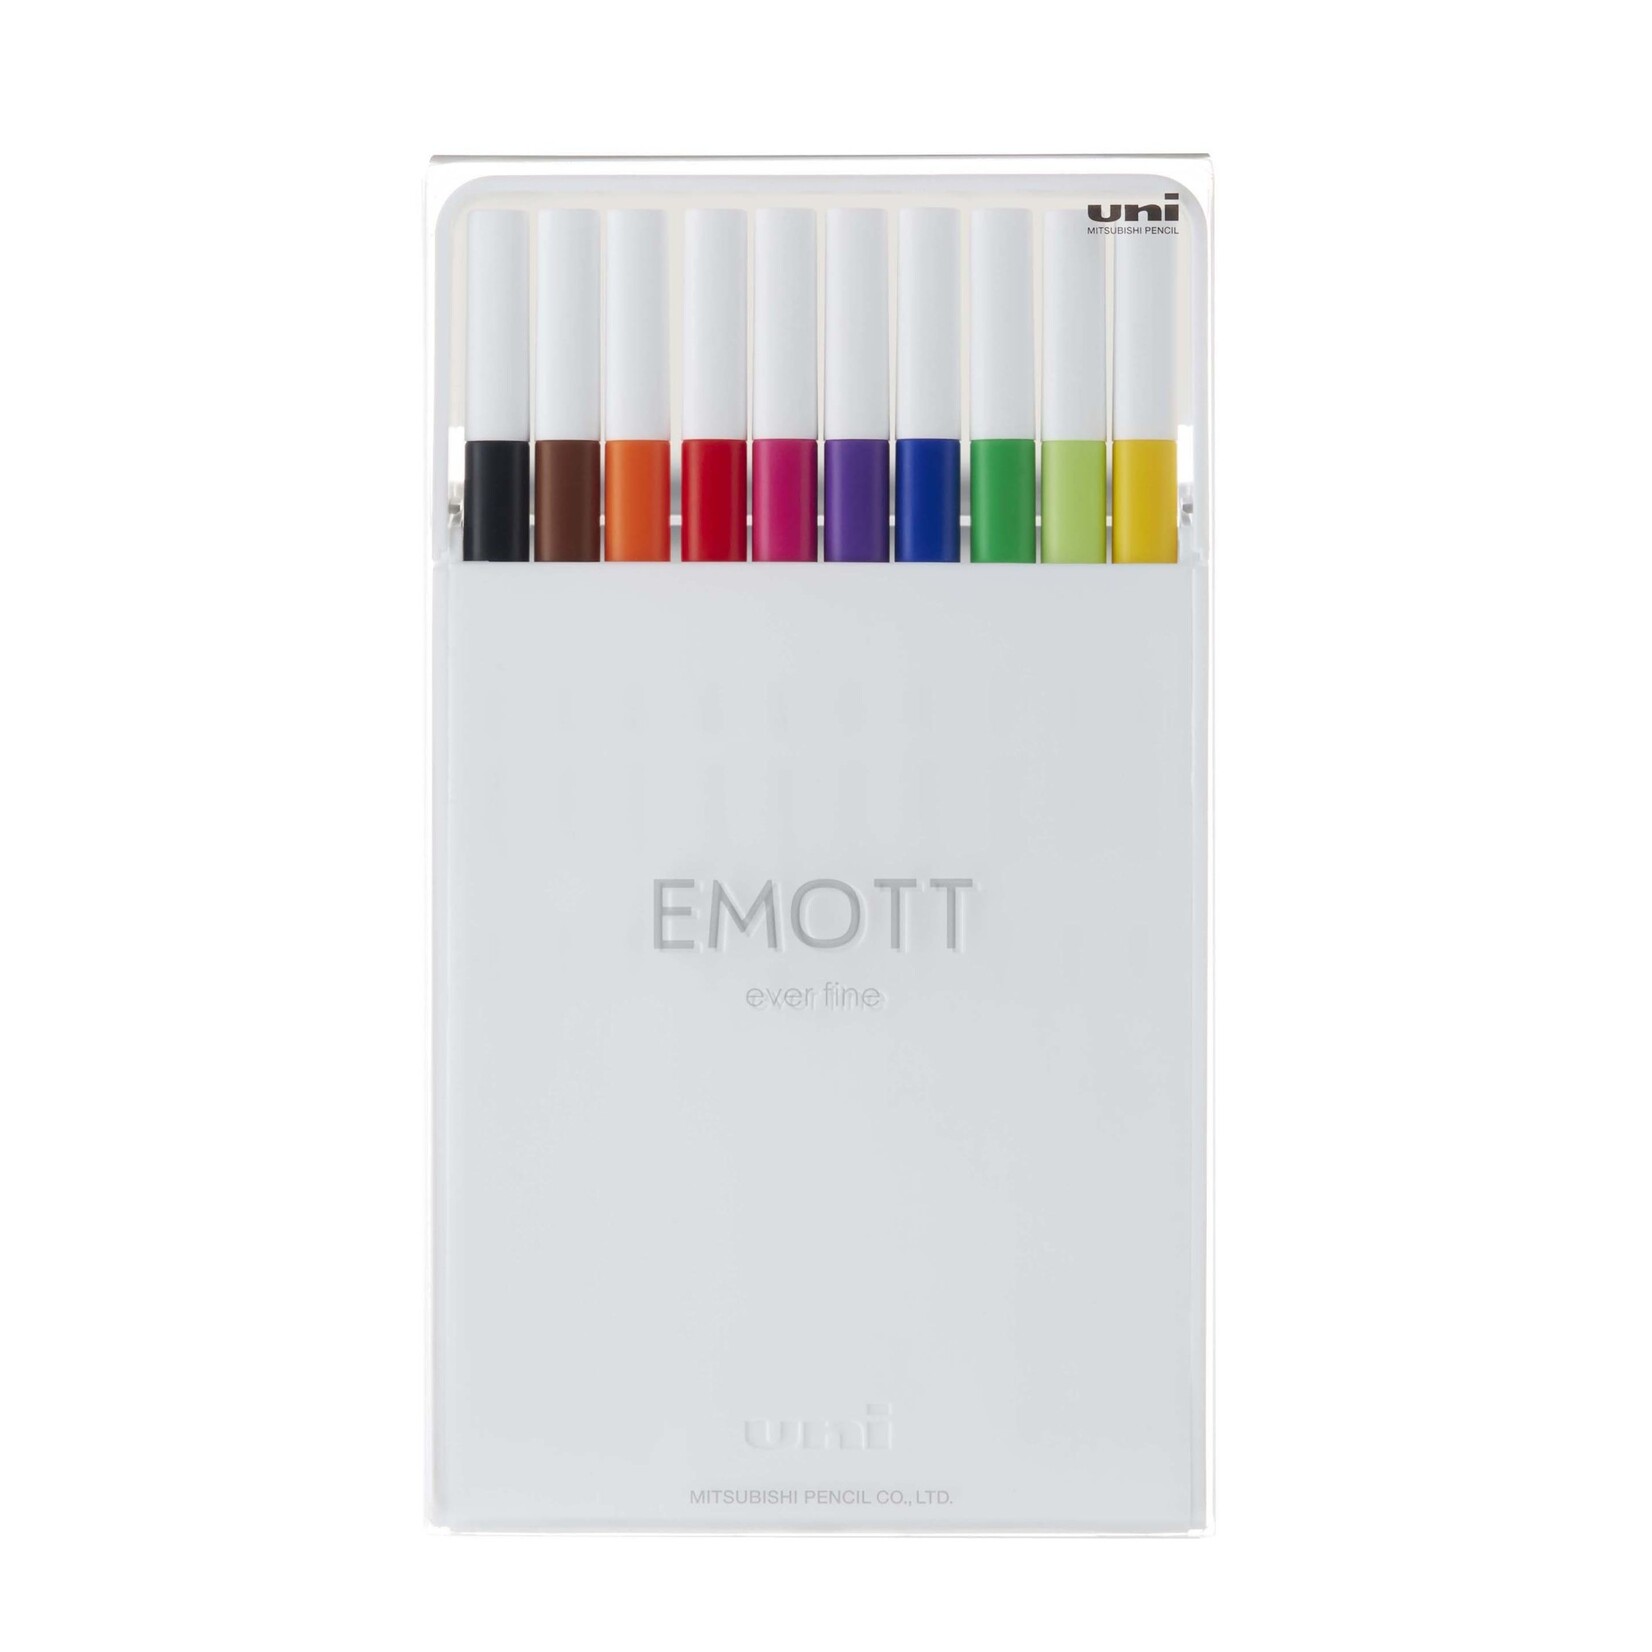 UX Uni Emott Fineliners EMOTT Fineliner Pen Sets, 10-Pen Set #1